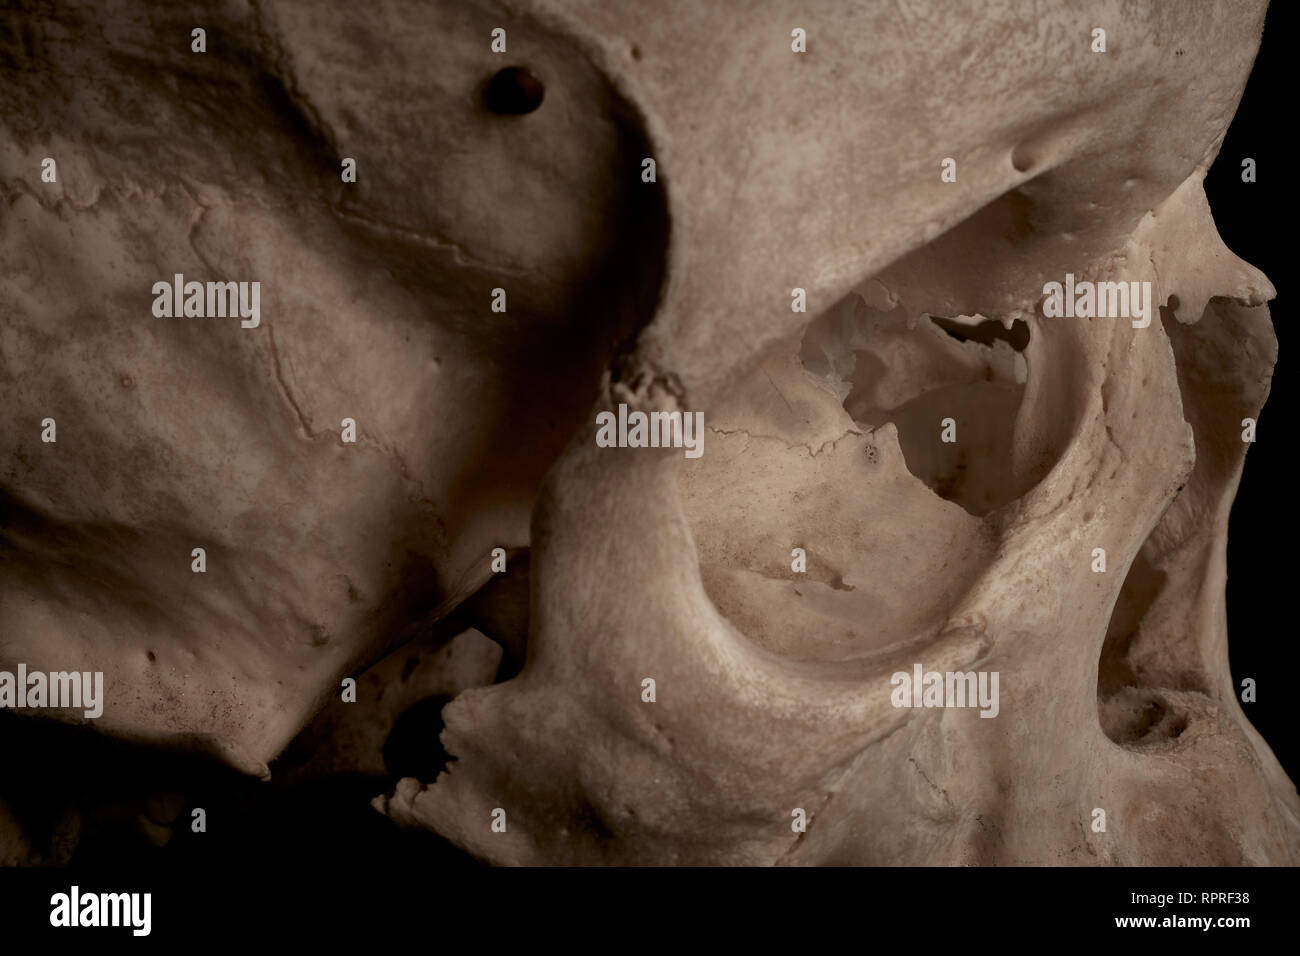 Extreme close up du côté droit d'un crâne humain en mettant l'accent sur le globe oculaire. Banque D'Images